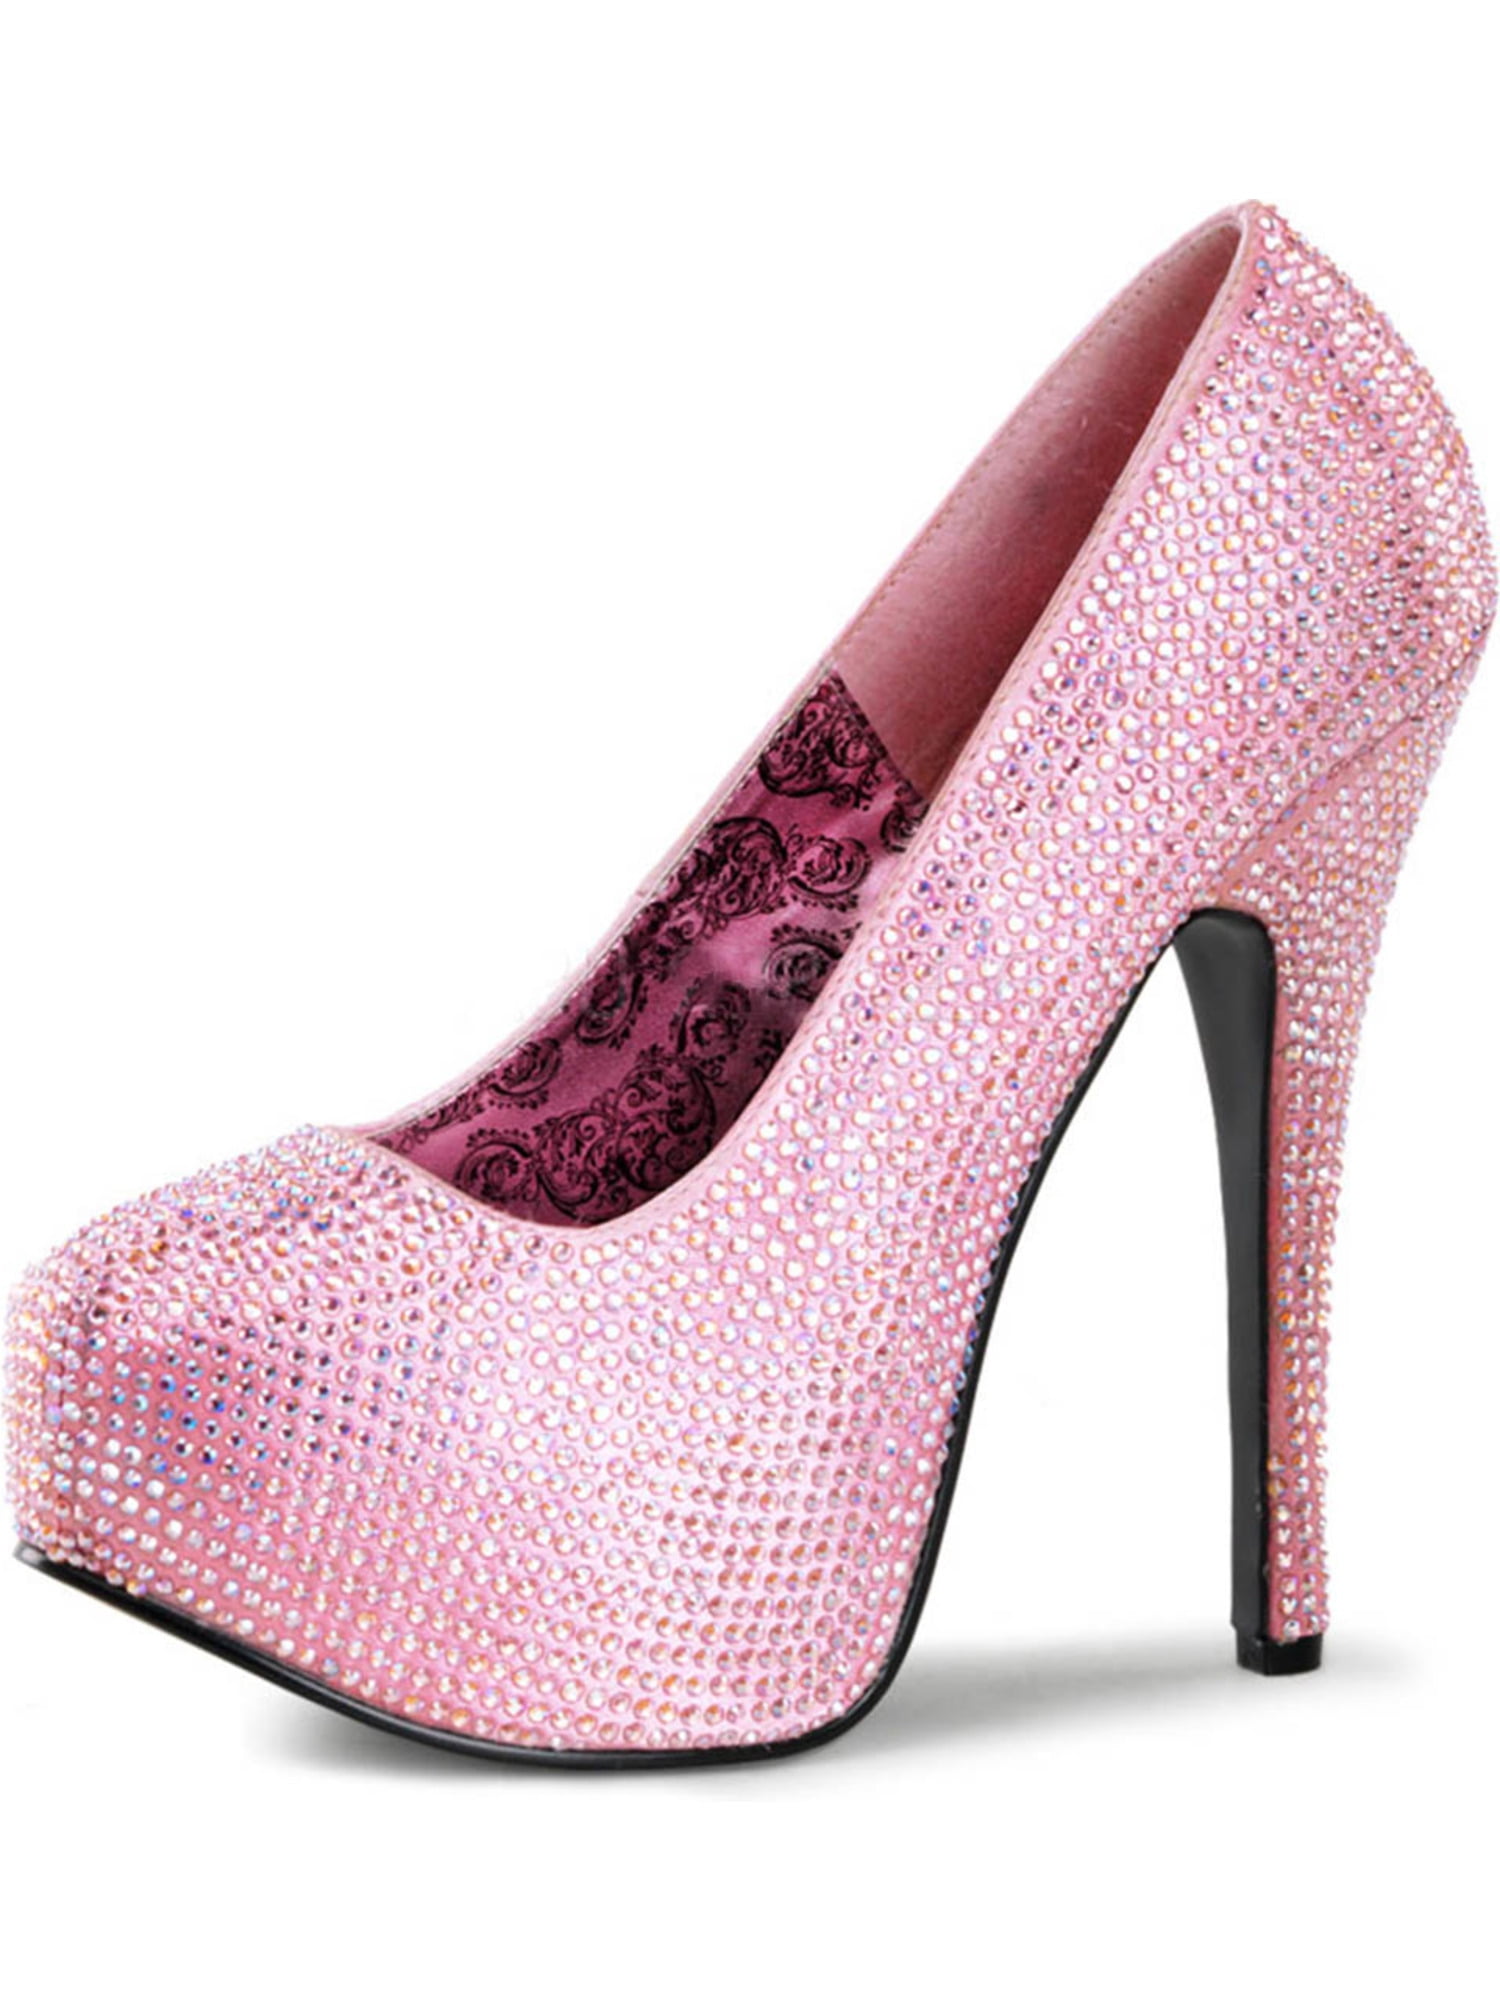 slå Forvirrede praktiseret Augusta Sportswear - rhinestone embellished pale pink pumps with concealed  platform and 5.75'' heels - Walmart.com - Walmart.com